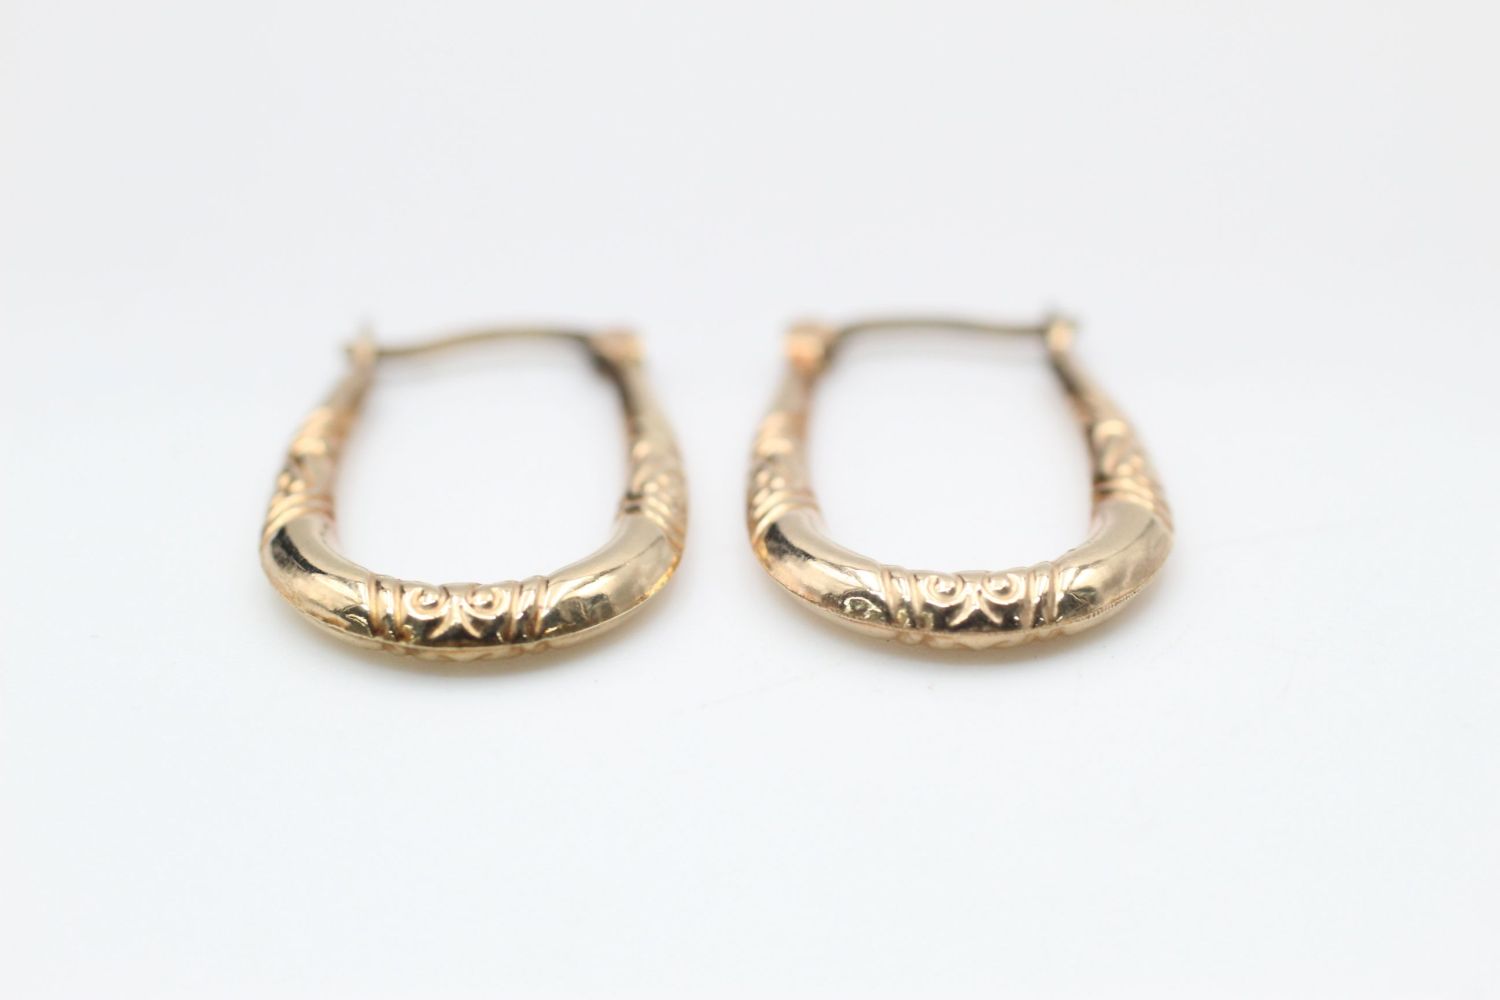 2 x 9ct Gold hoop earrings inc. engraved 1.9 grams gross - Image 3 of 7